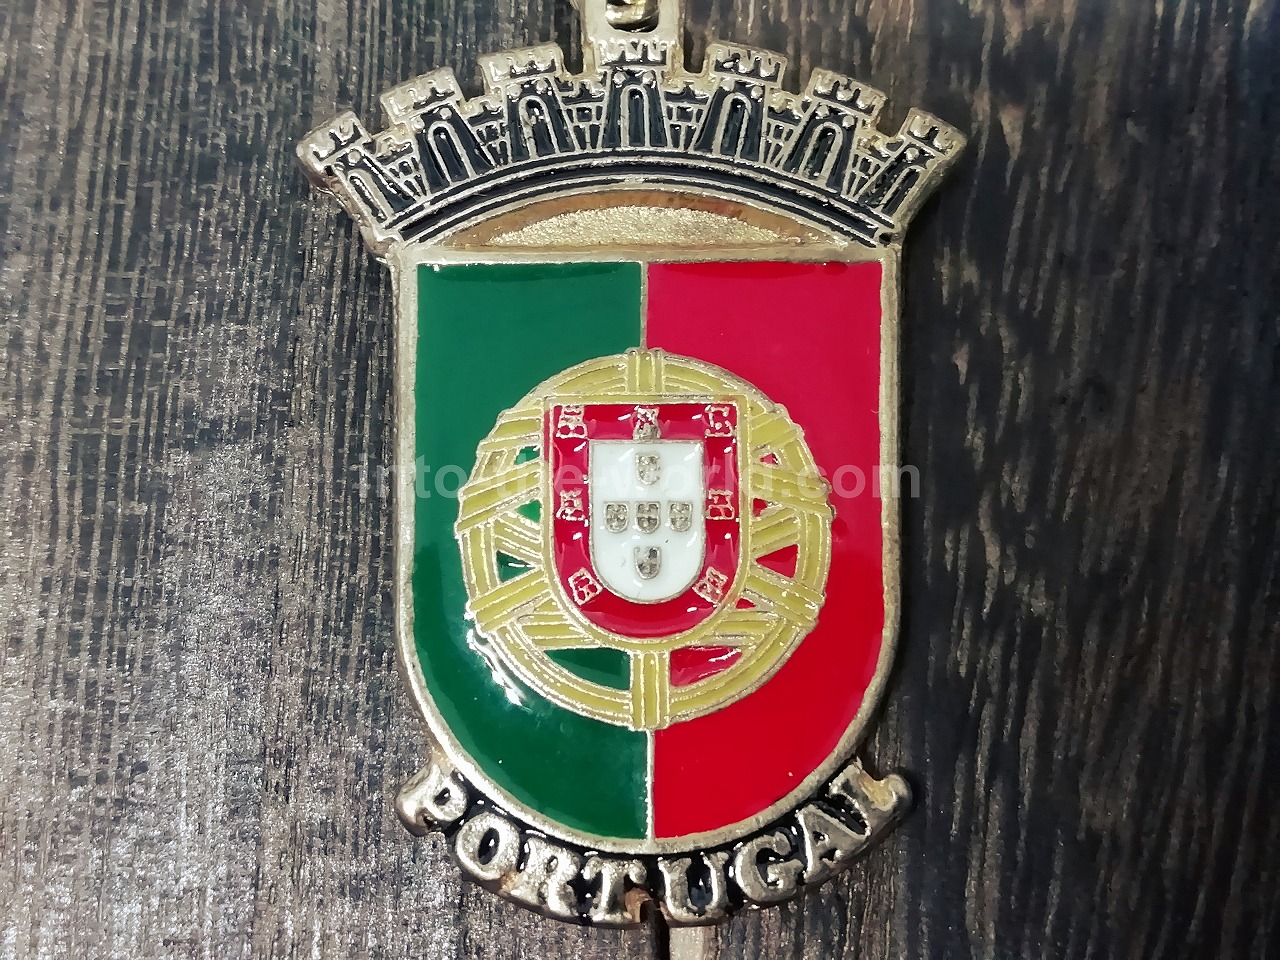 ポルトガル キーホルダー お土産